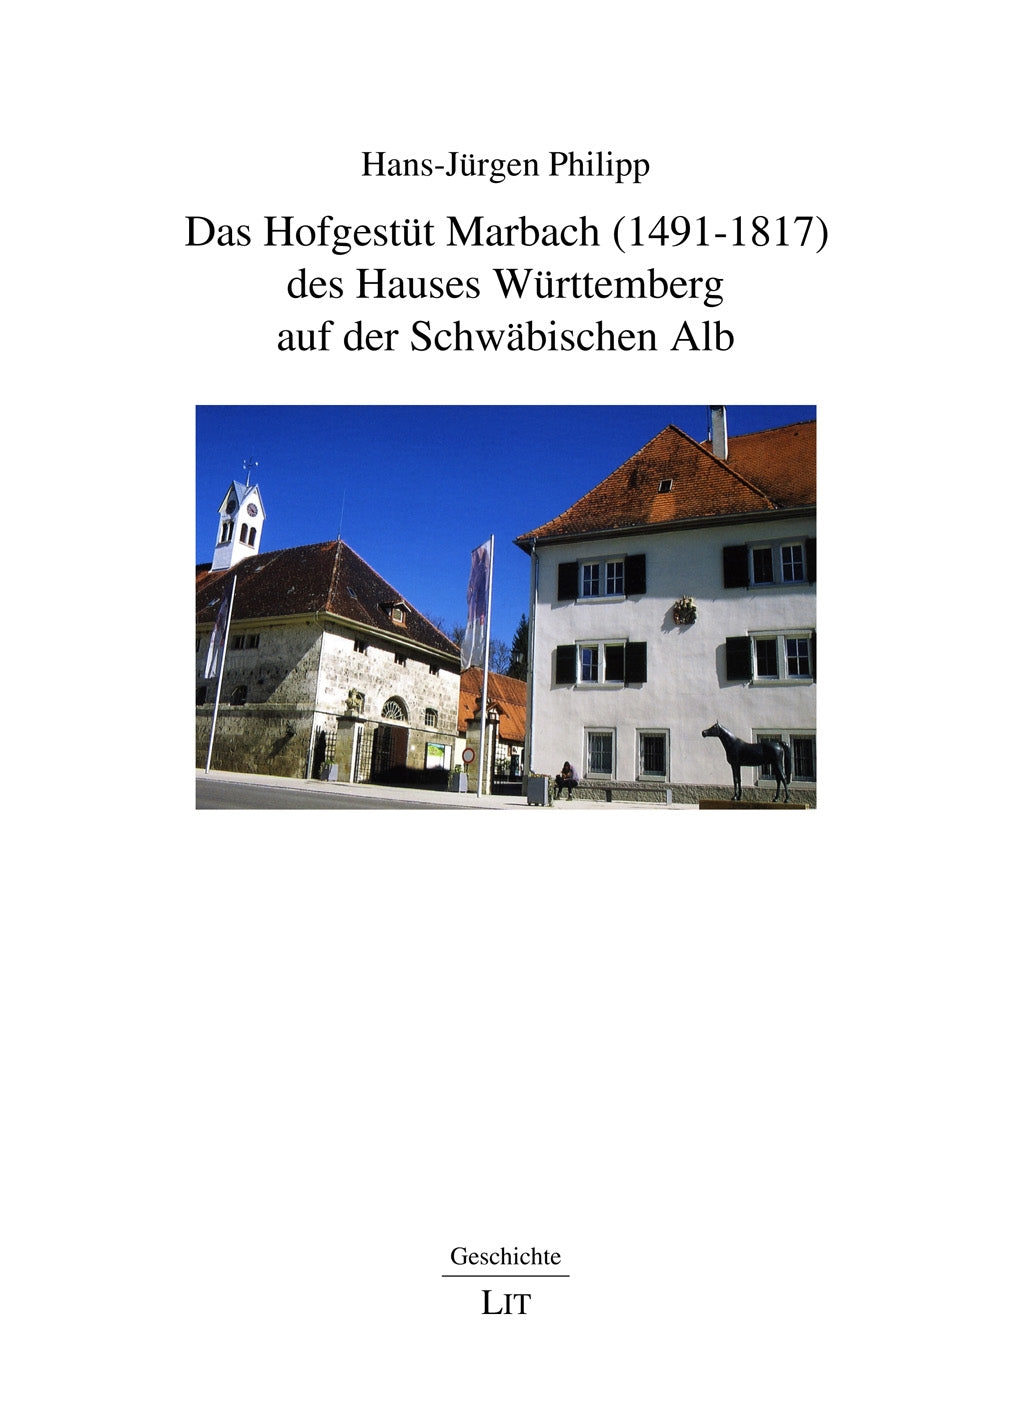 Das Hofgestüt Marbach (1491-1817) des Hauses Württemberg auf der Schwäbischen Alb